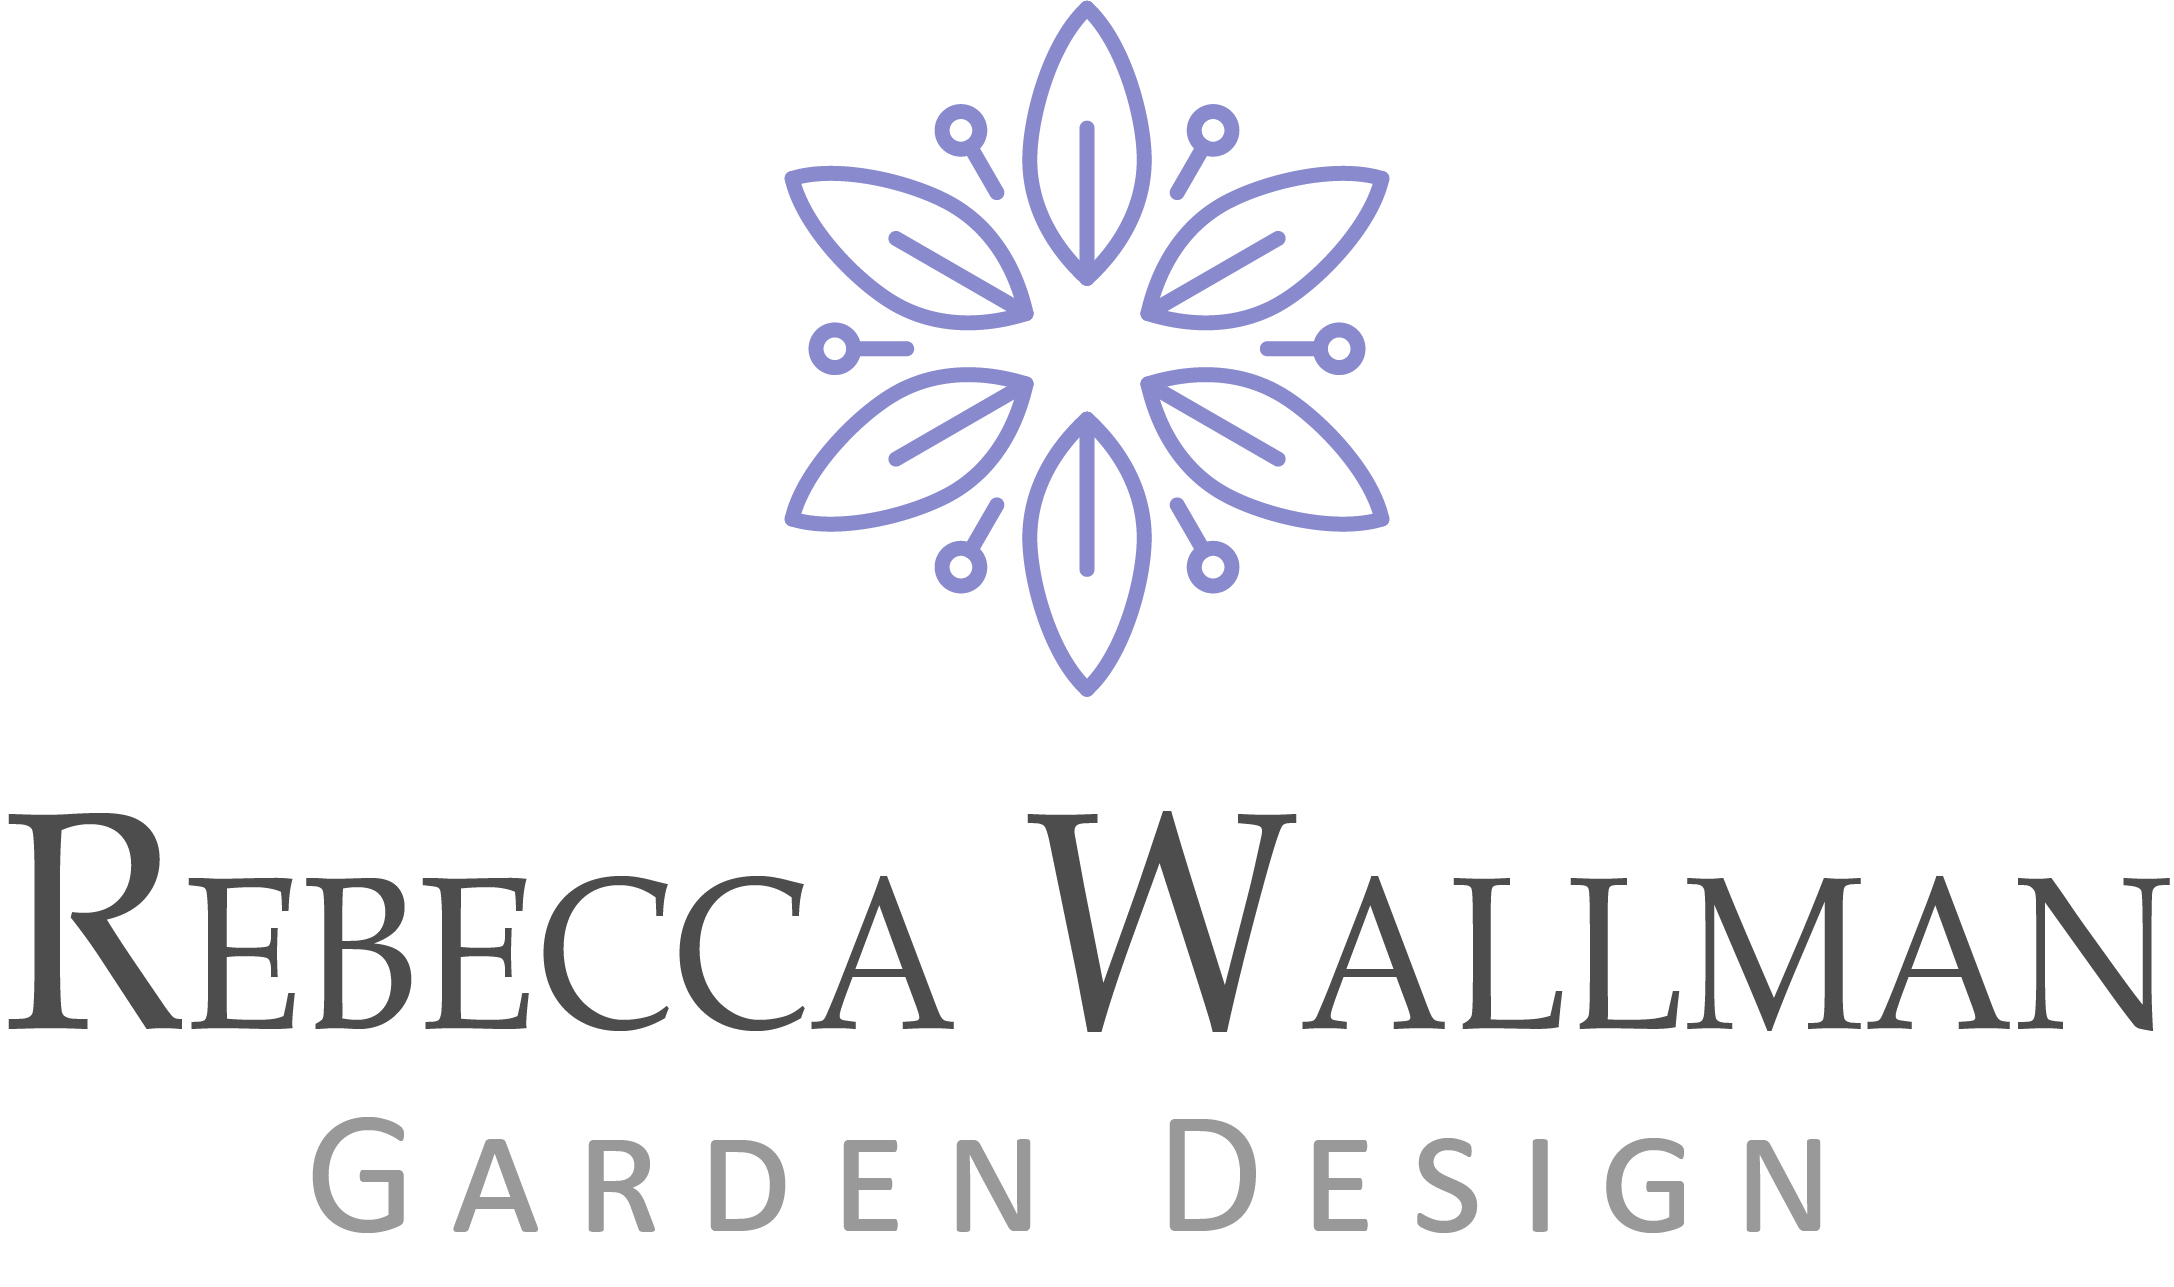 Rebecca Wallman Garden Design | Home